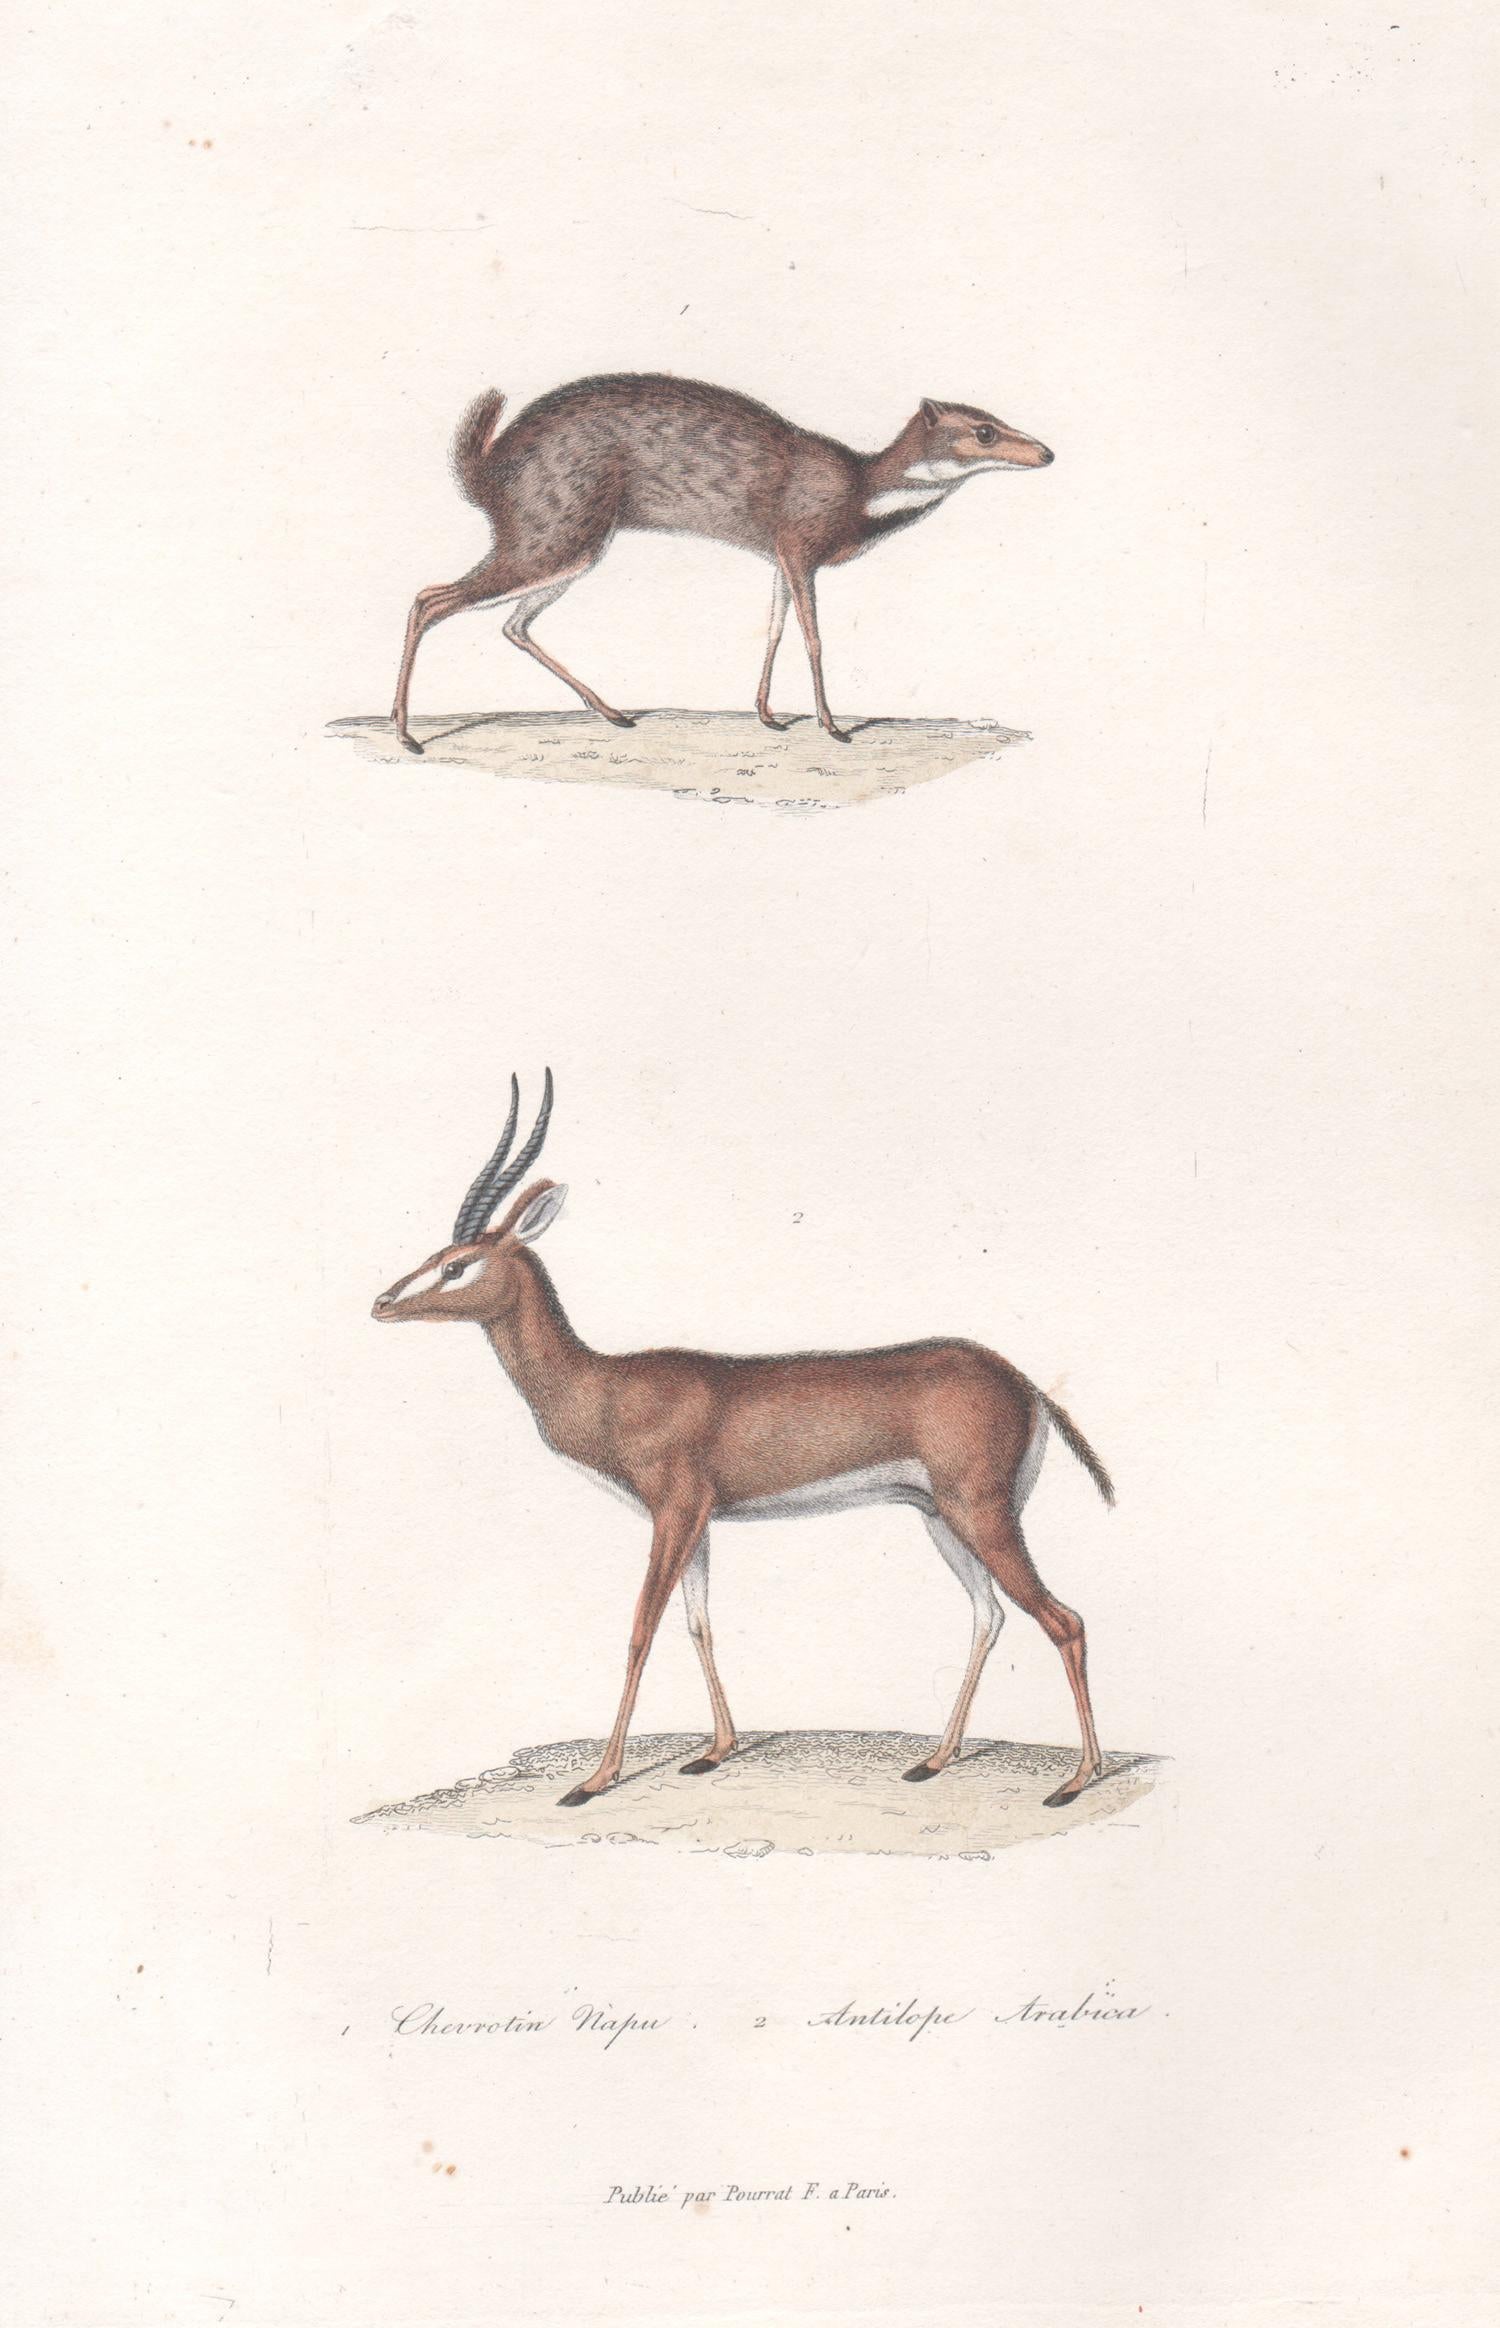 Tierstiche von Chevrotain und Araber Antelope, Tiergravur aus der Mitte des 19. Jahrhunderts